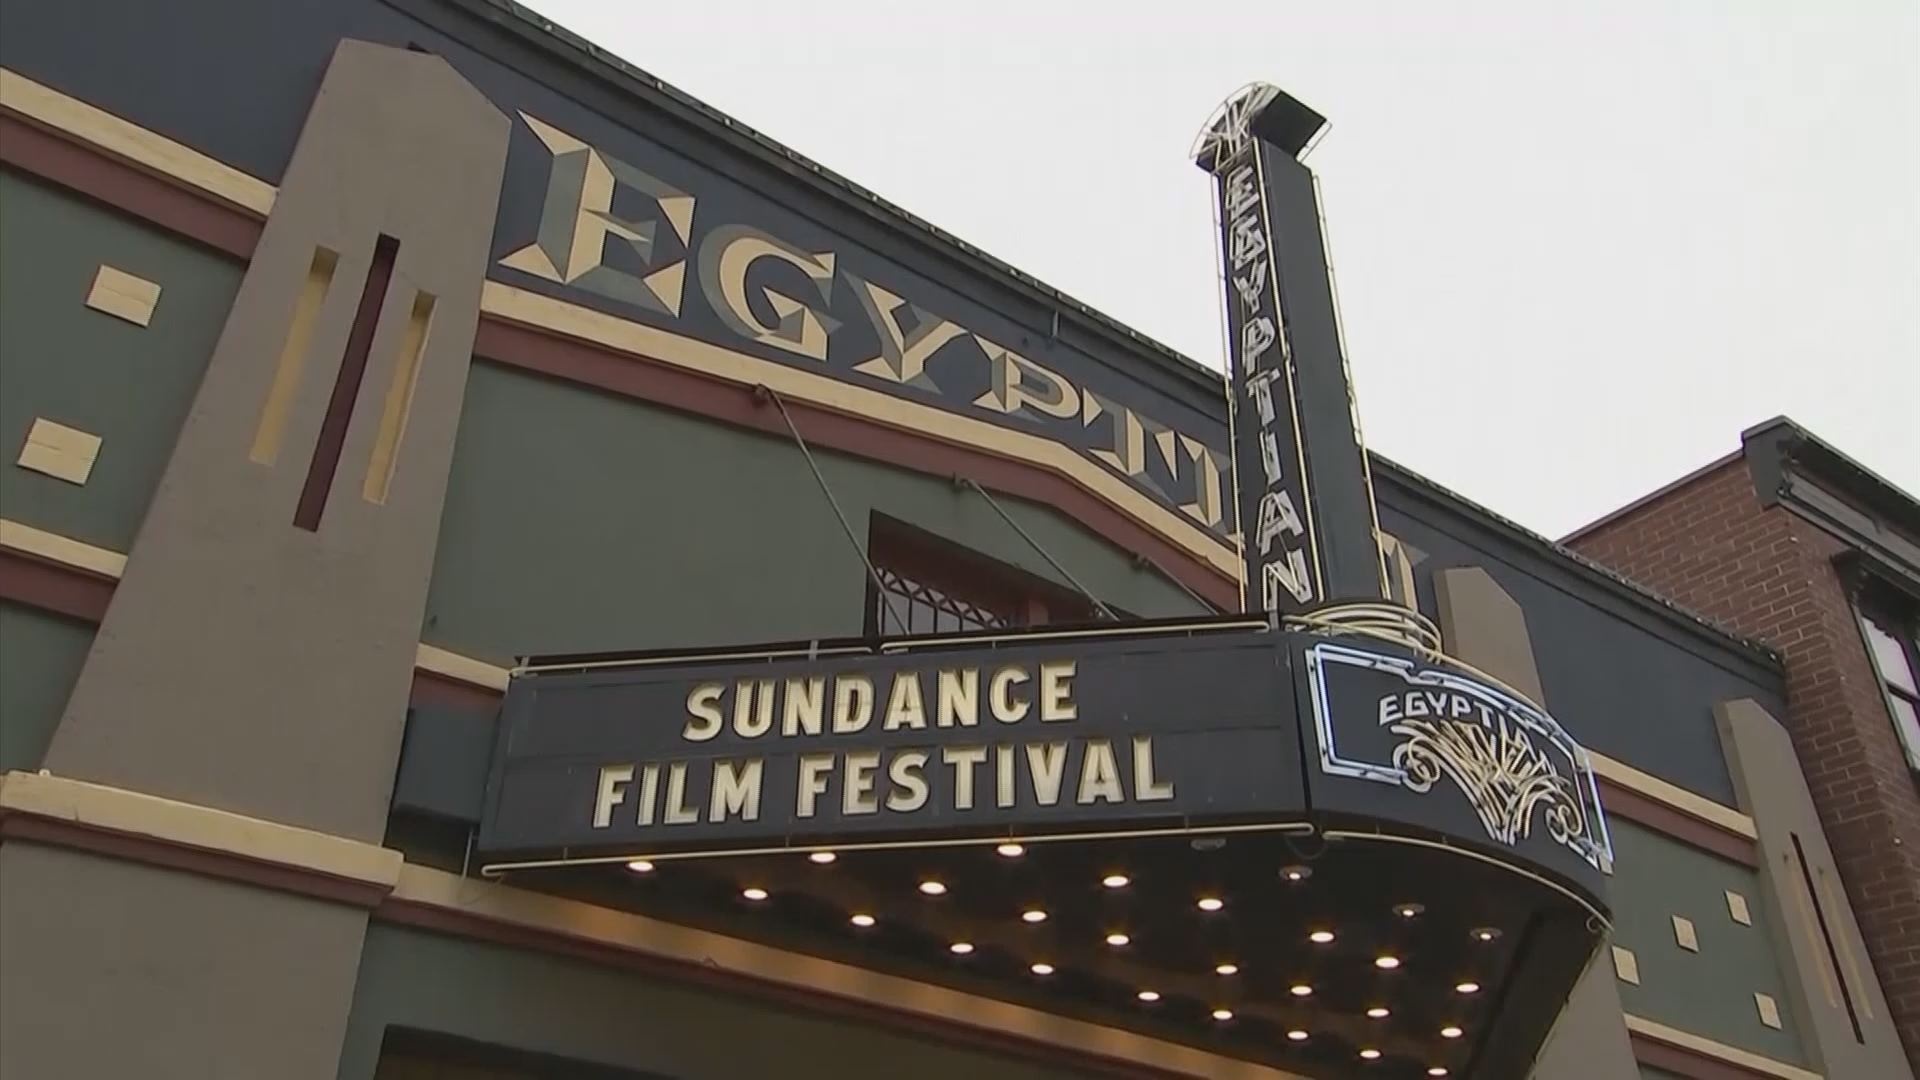 Sundance Film Festival, Rockford documentary, Premieres at Sundance, Film fest, 1920x1080 Full HD Desktop